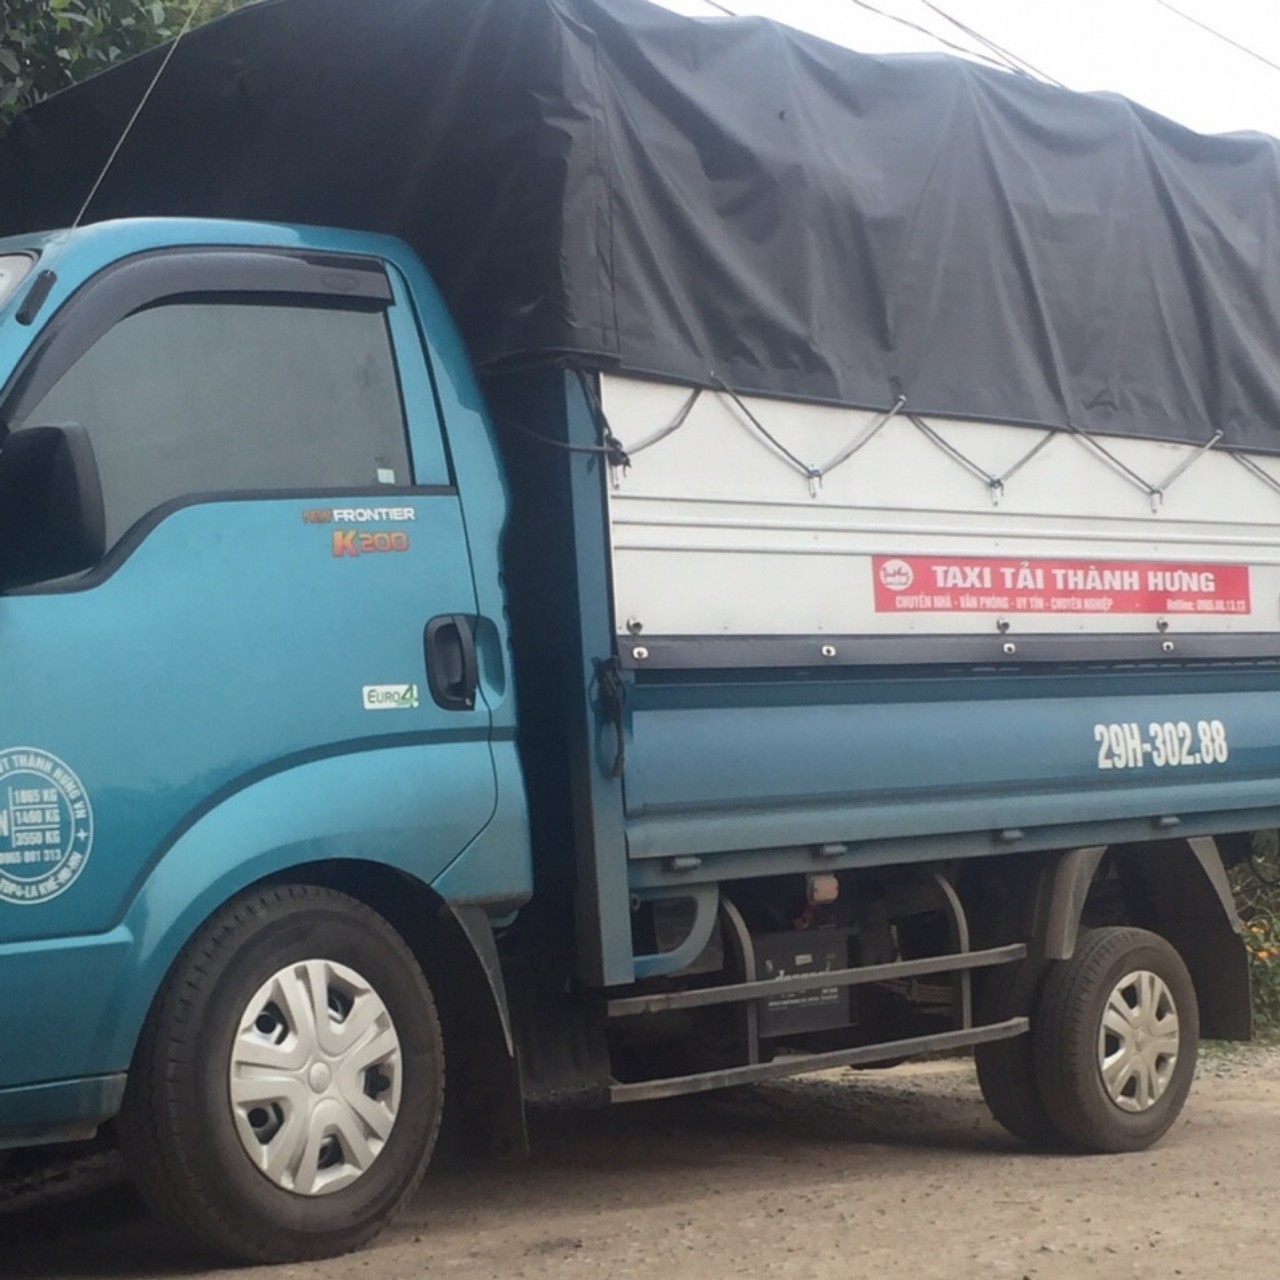 Taxi tải Thành Hưng, dịch vụ xe tải uy tín và chuyên nghiệp